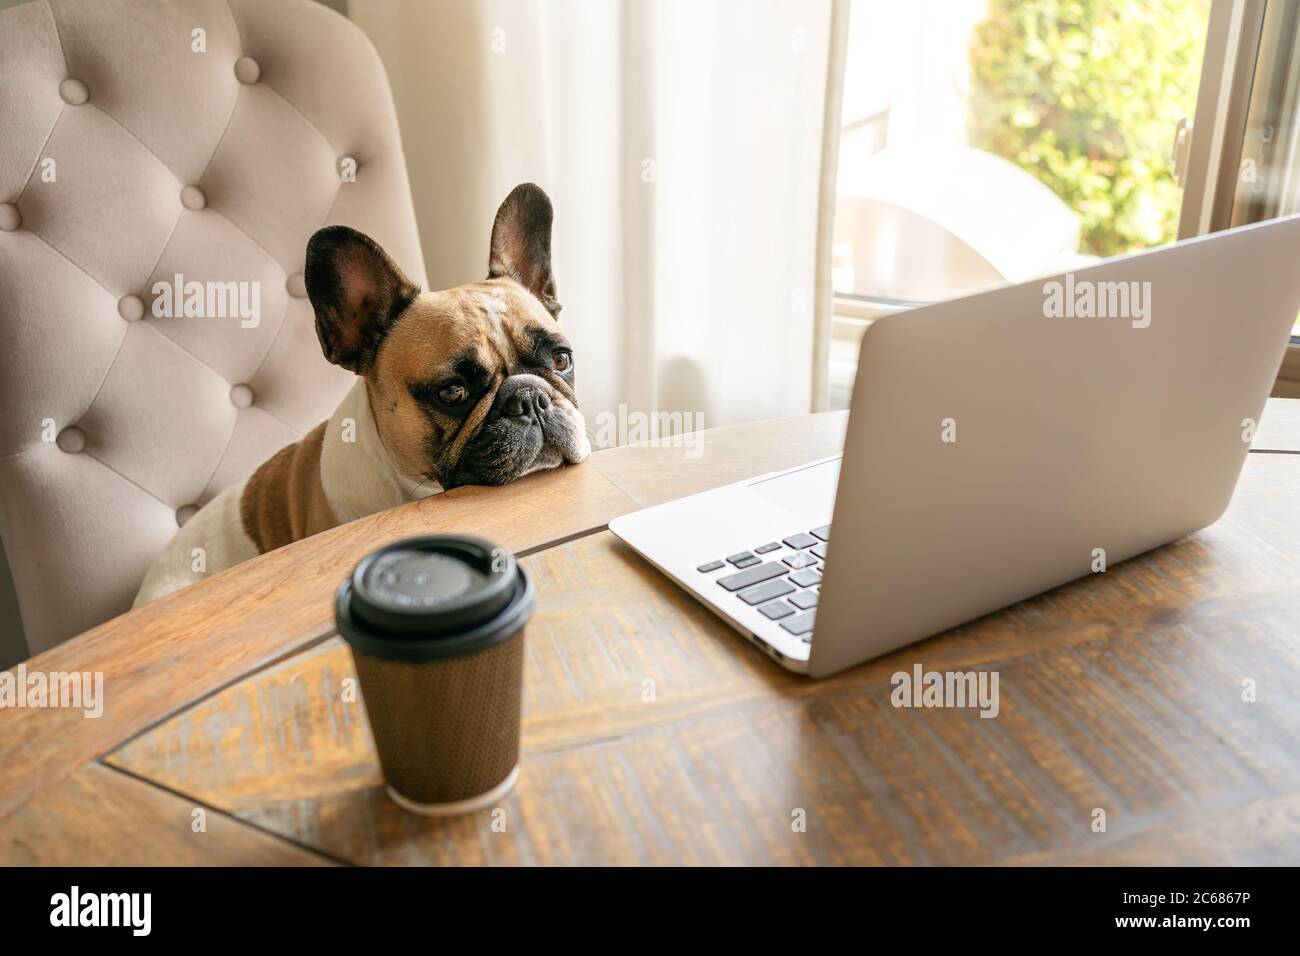 Bulldog français assis sur une chaise et regardant fatigué à l'appareil-photo pendant le travail sur ordinateur portable ce qui reste sur une table avec une tasse de café. Banque D'Images